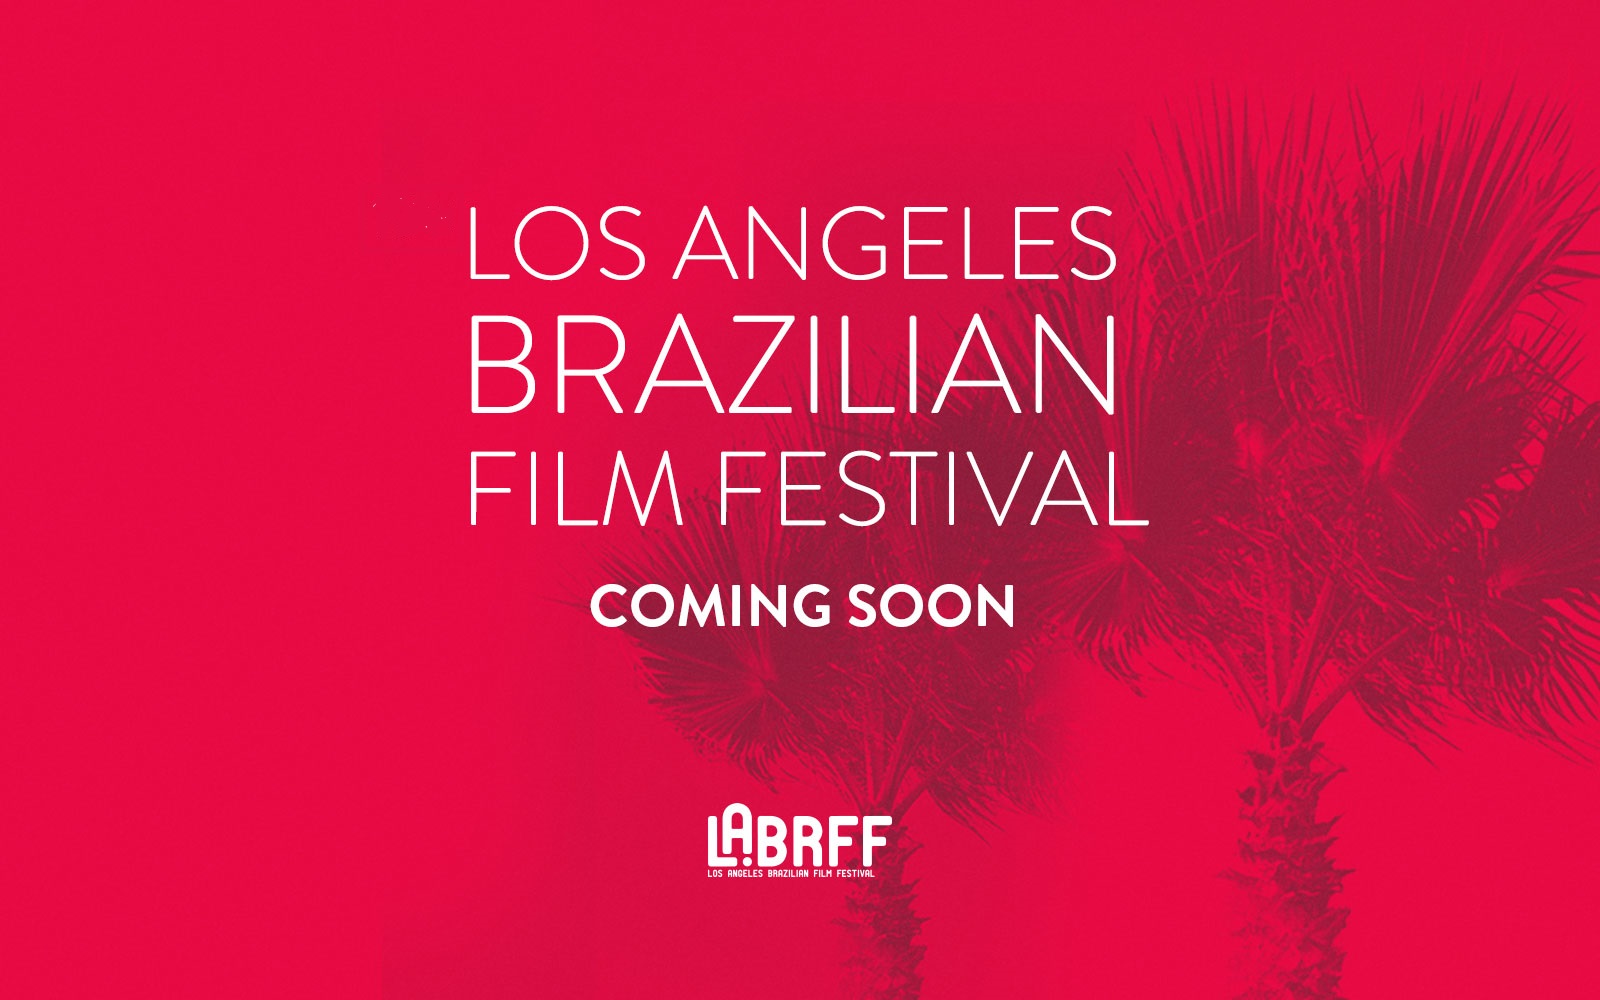 Los Angeles Brazilian Film Festival 2018 | Confira todos os indicados da 11ª edição